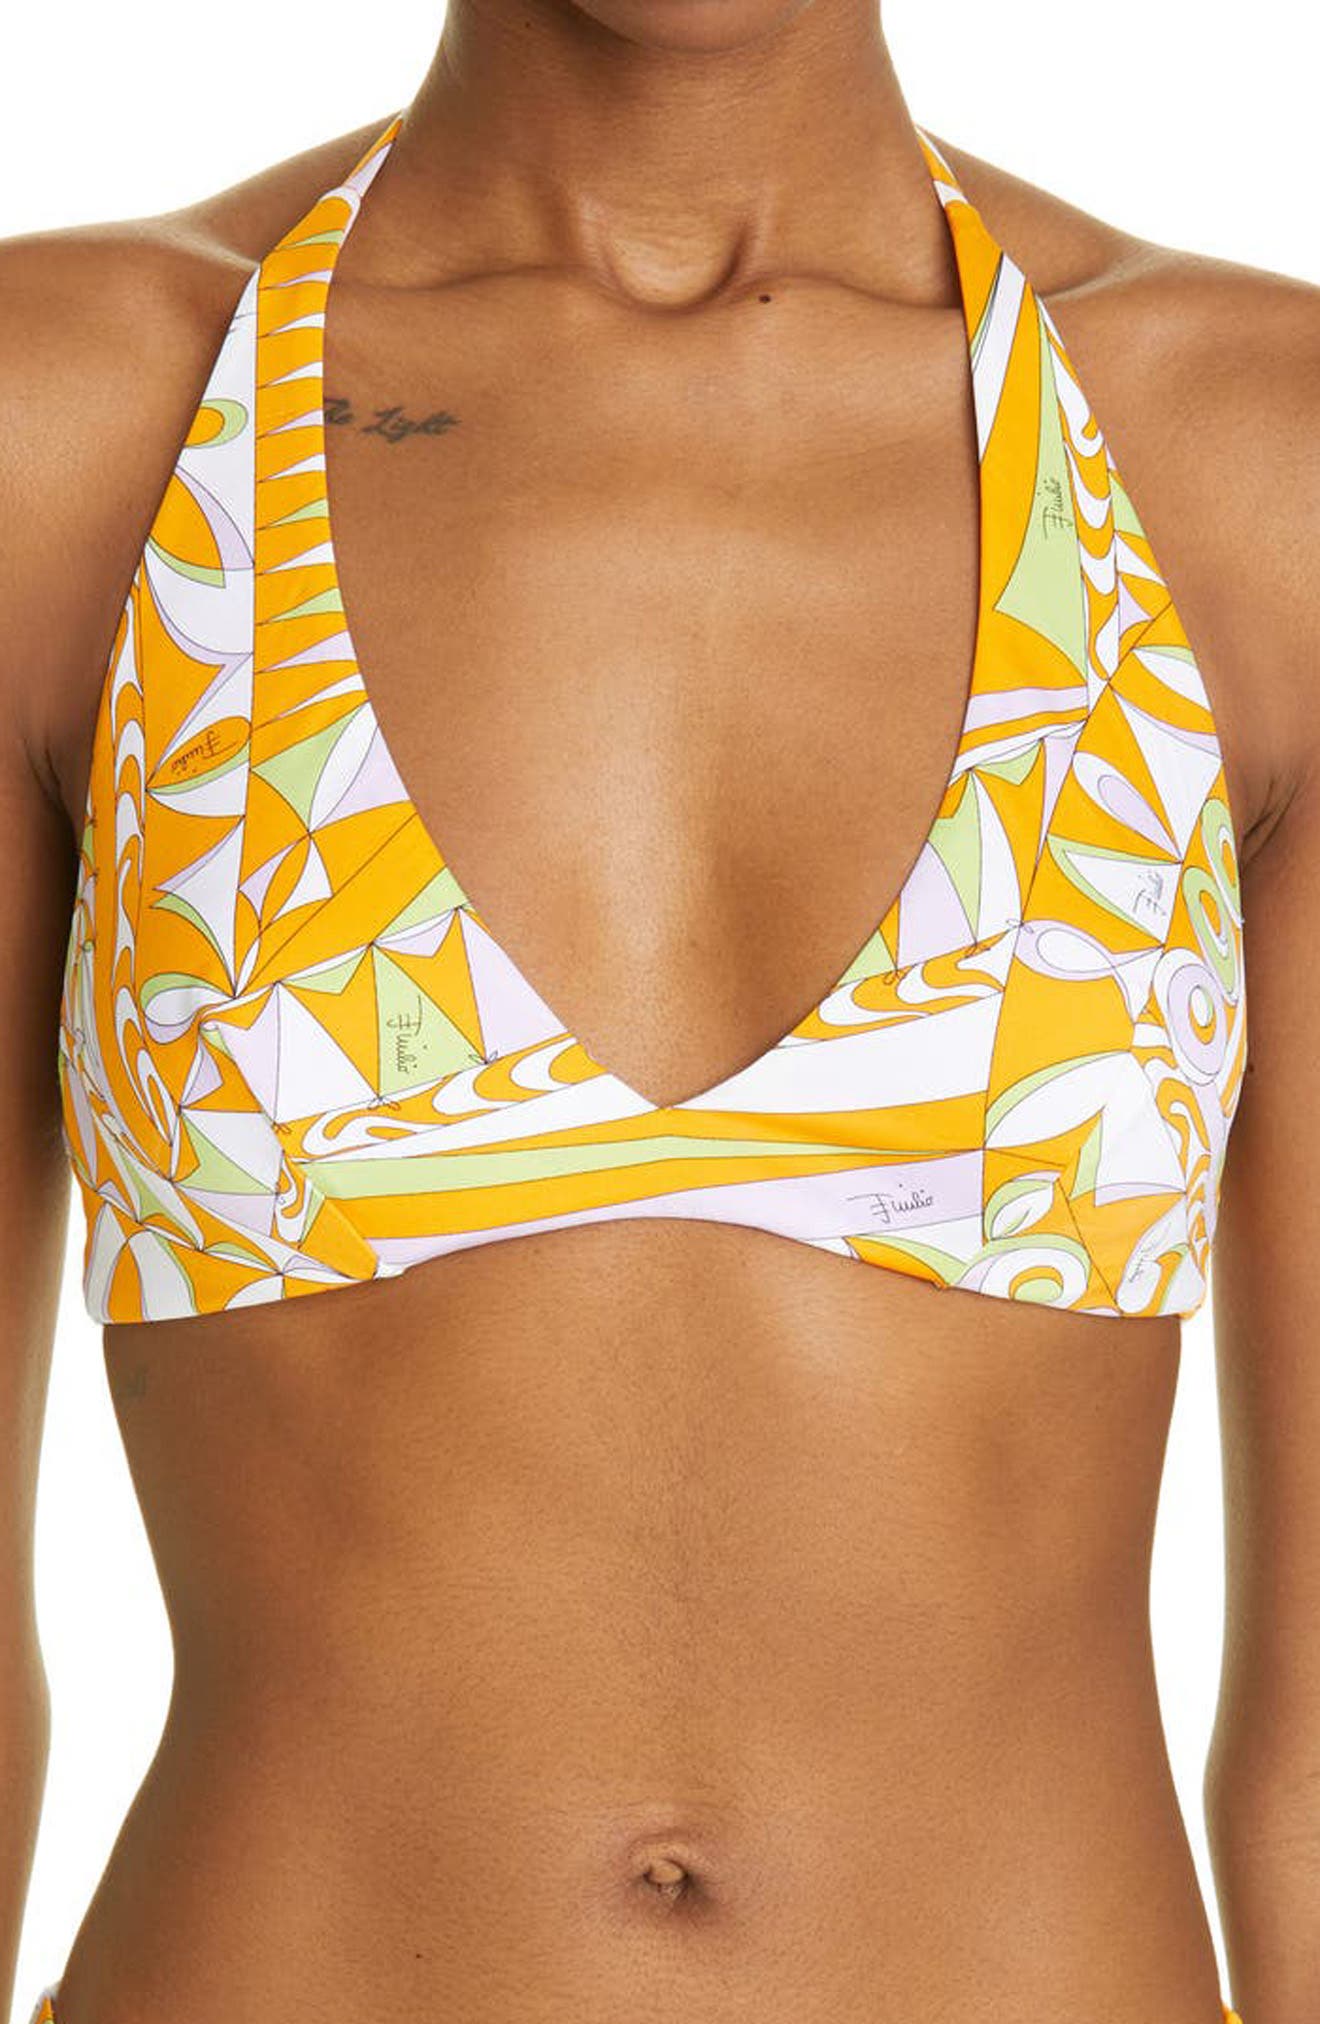 Emilio Pucci Bandierine Print Bikini Top in Acqua Giallo at Nordstrom, Size 4 Us